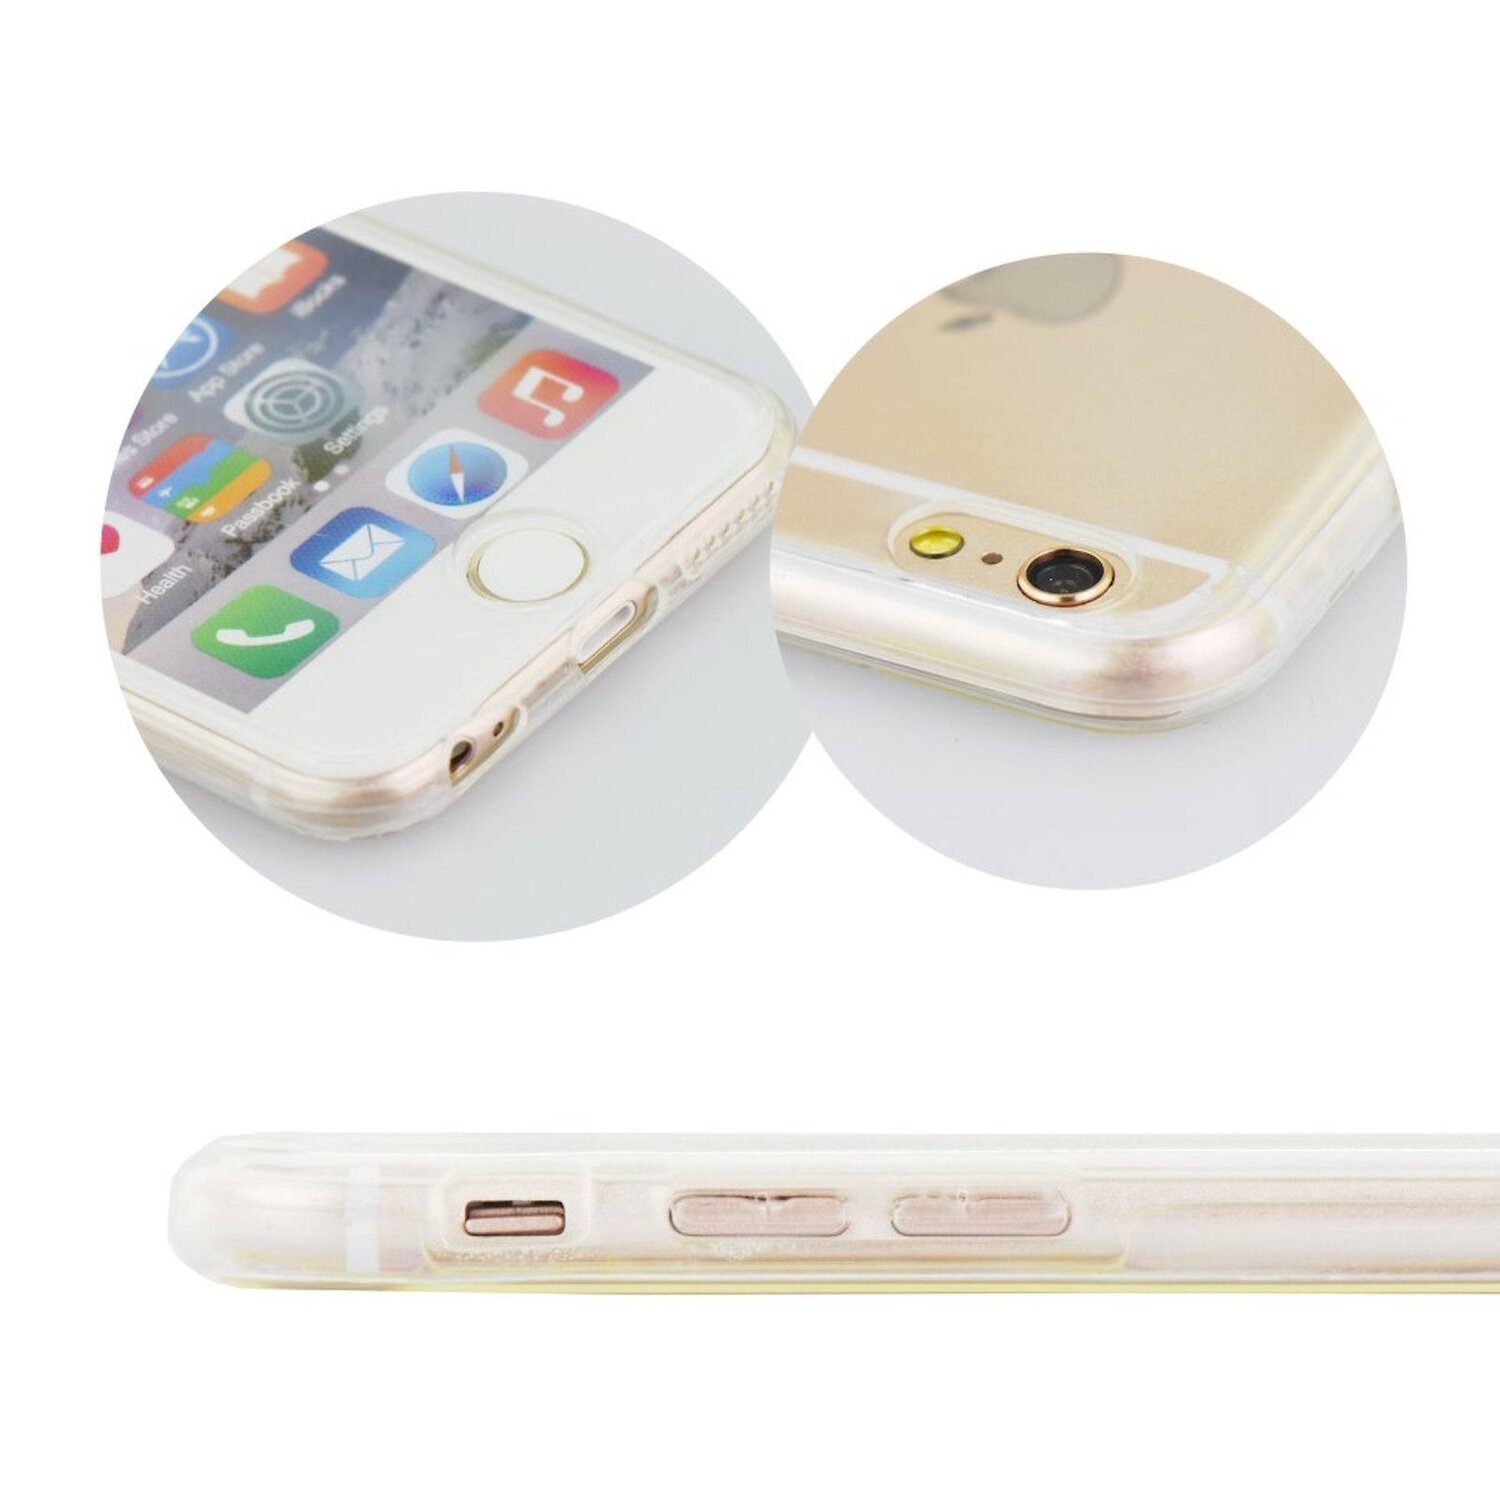 Case, COFI 13, Apple, 360 Full Transparent iPhone Cover,